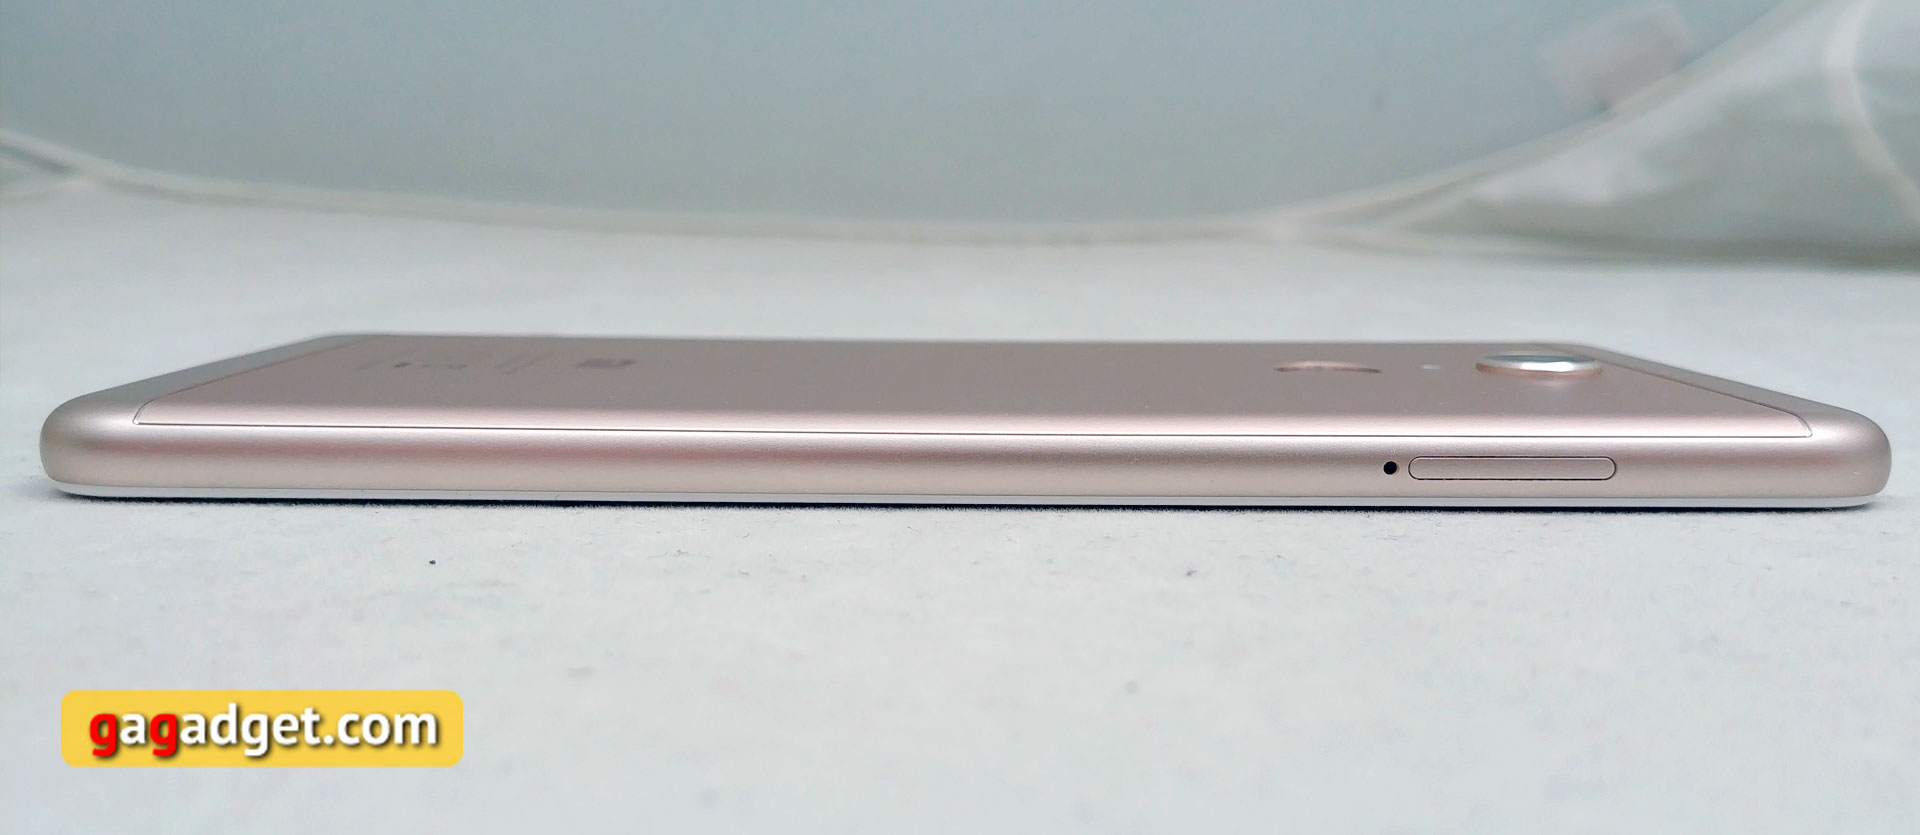 Обзор Xiaomi Redmi 5: хитовый бюджетный смартфон теперь с экраном 18:9-10